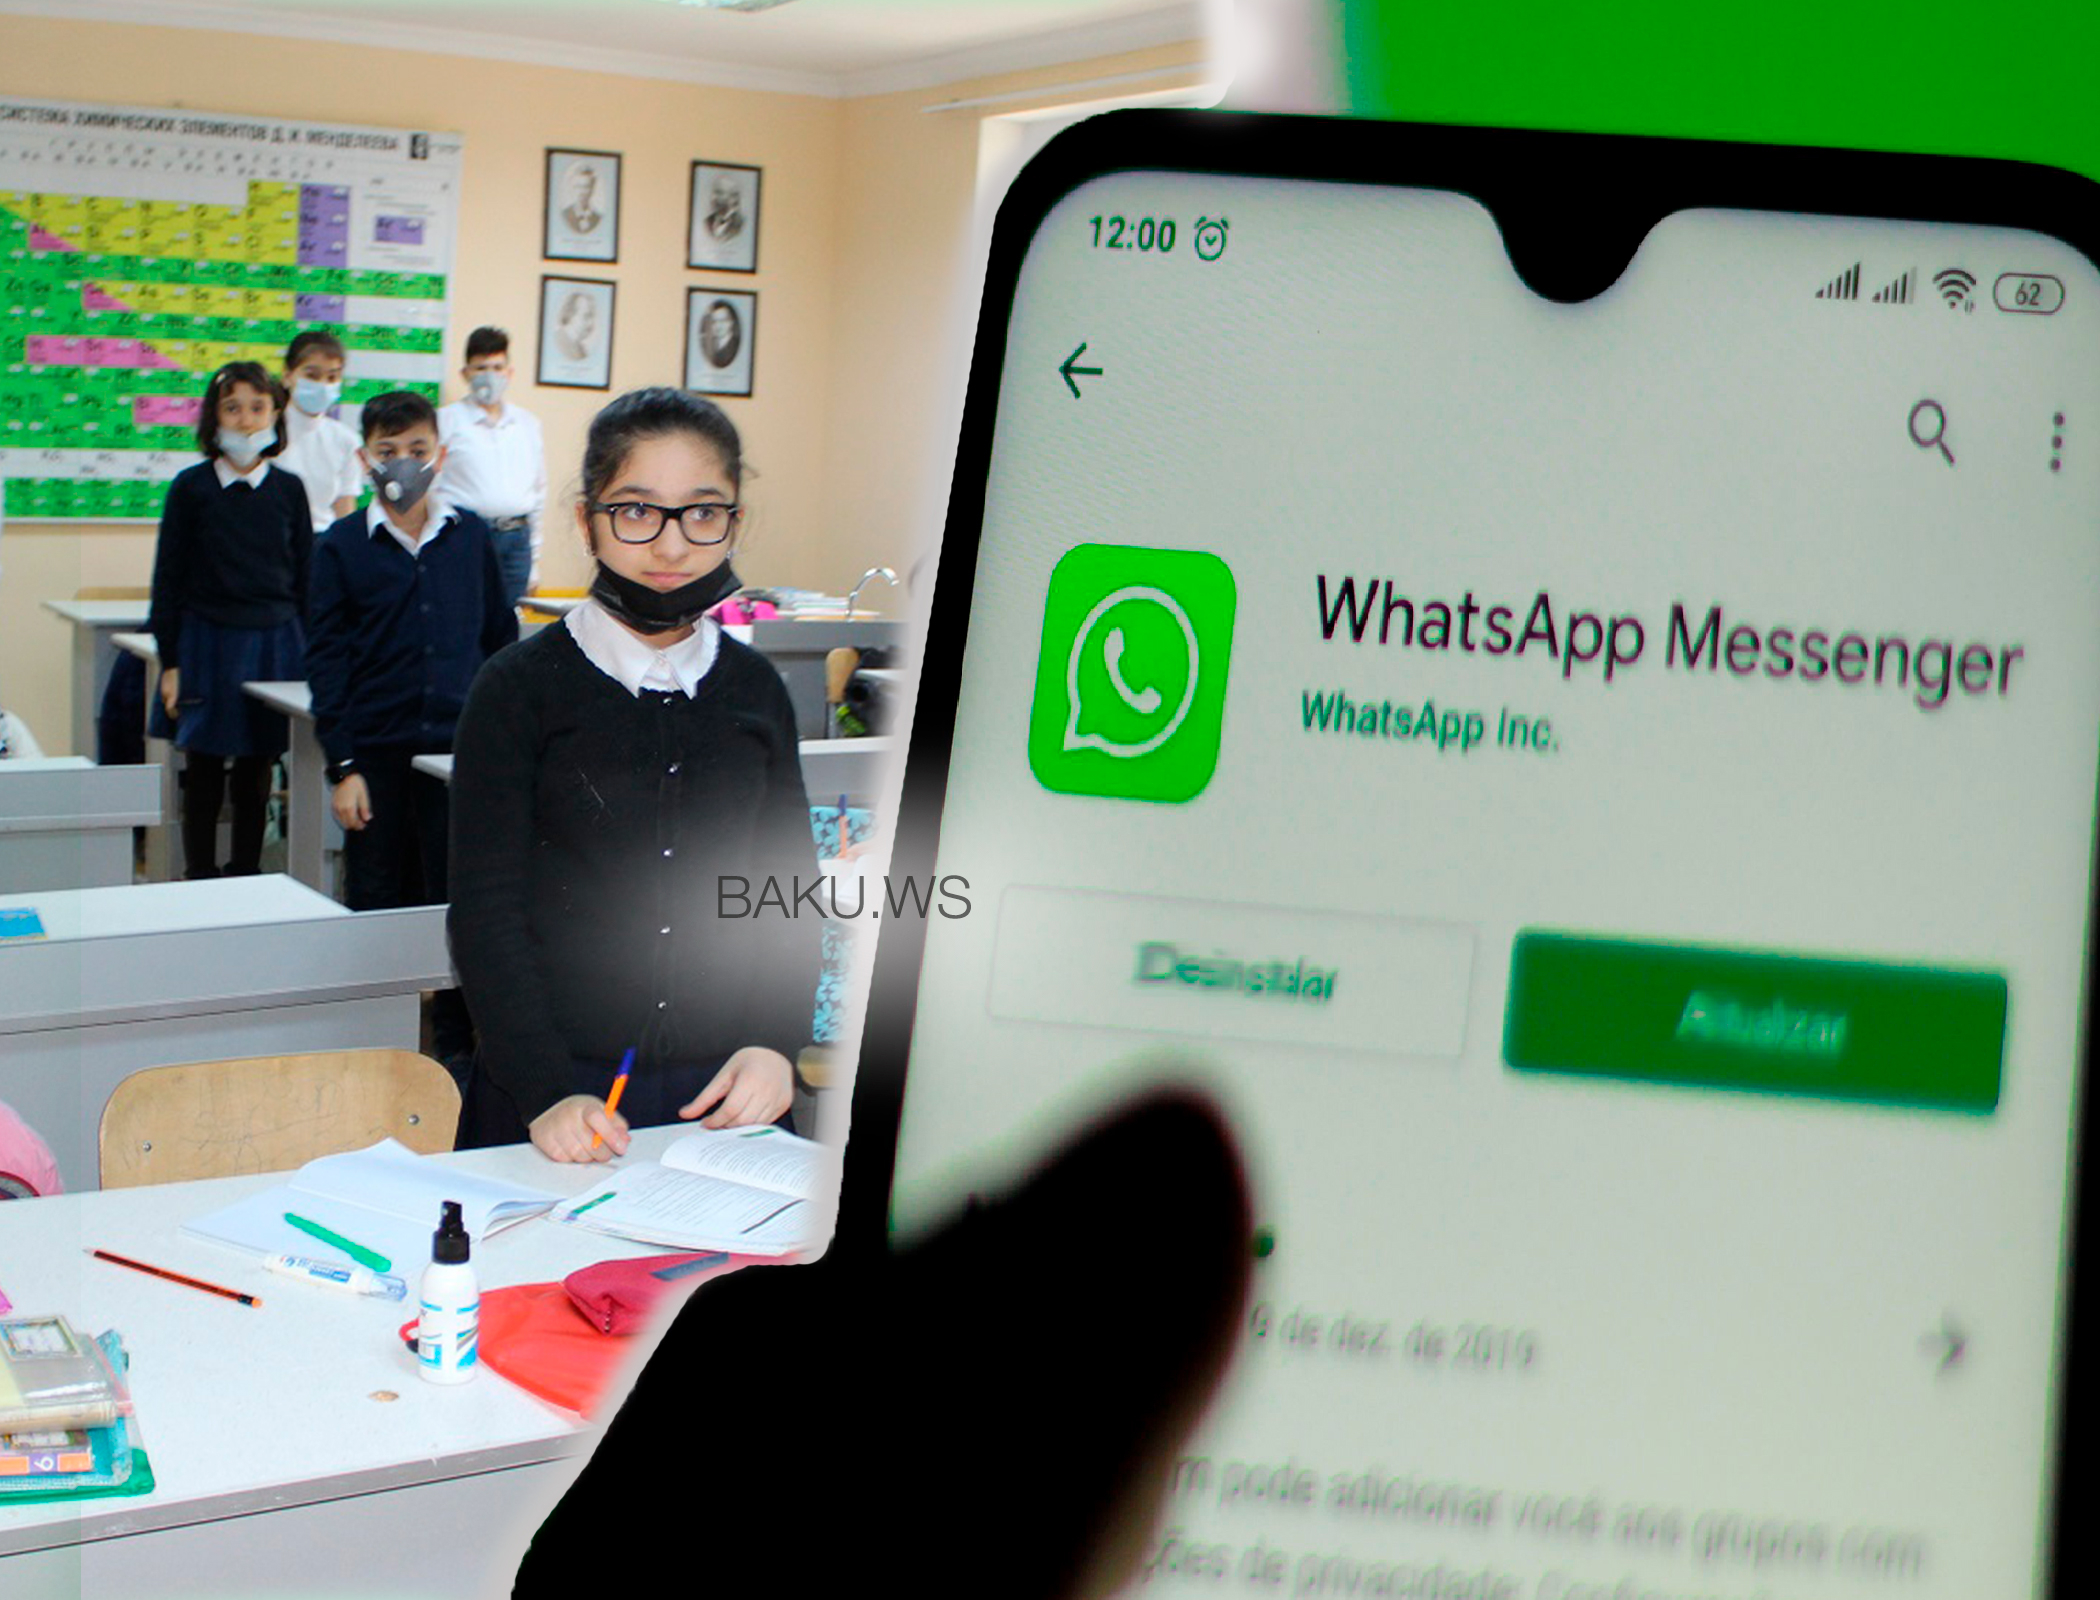 Распространенная в WhatsApp аудиозапись ввергла родителей в панику